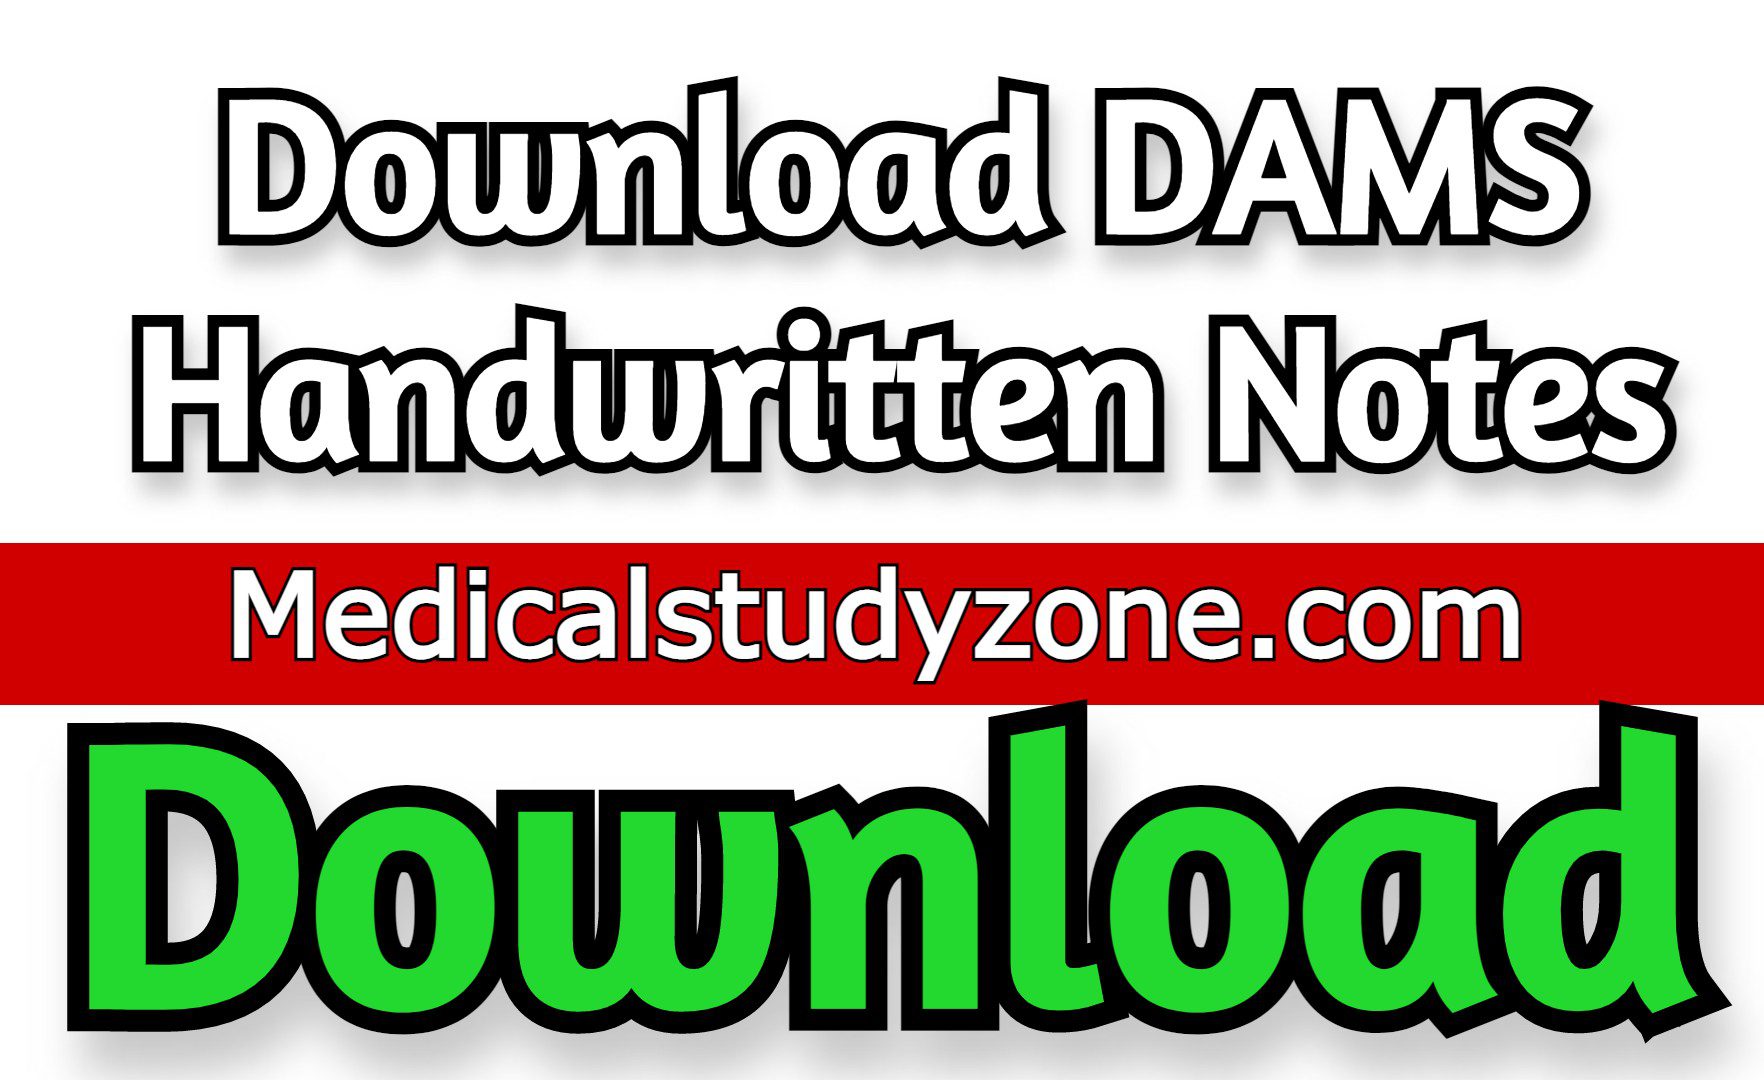 Download DAMS Handwritten Notes 2022 PDF FREE